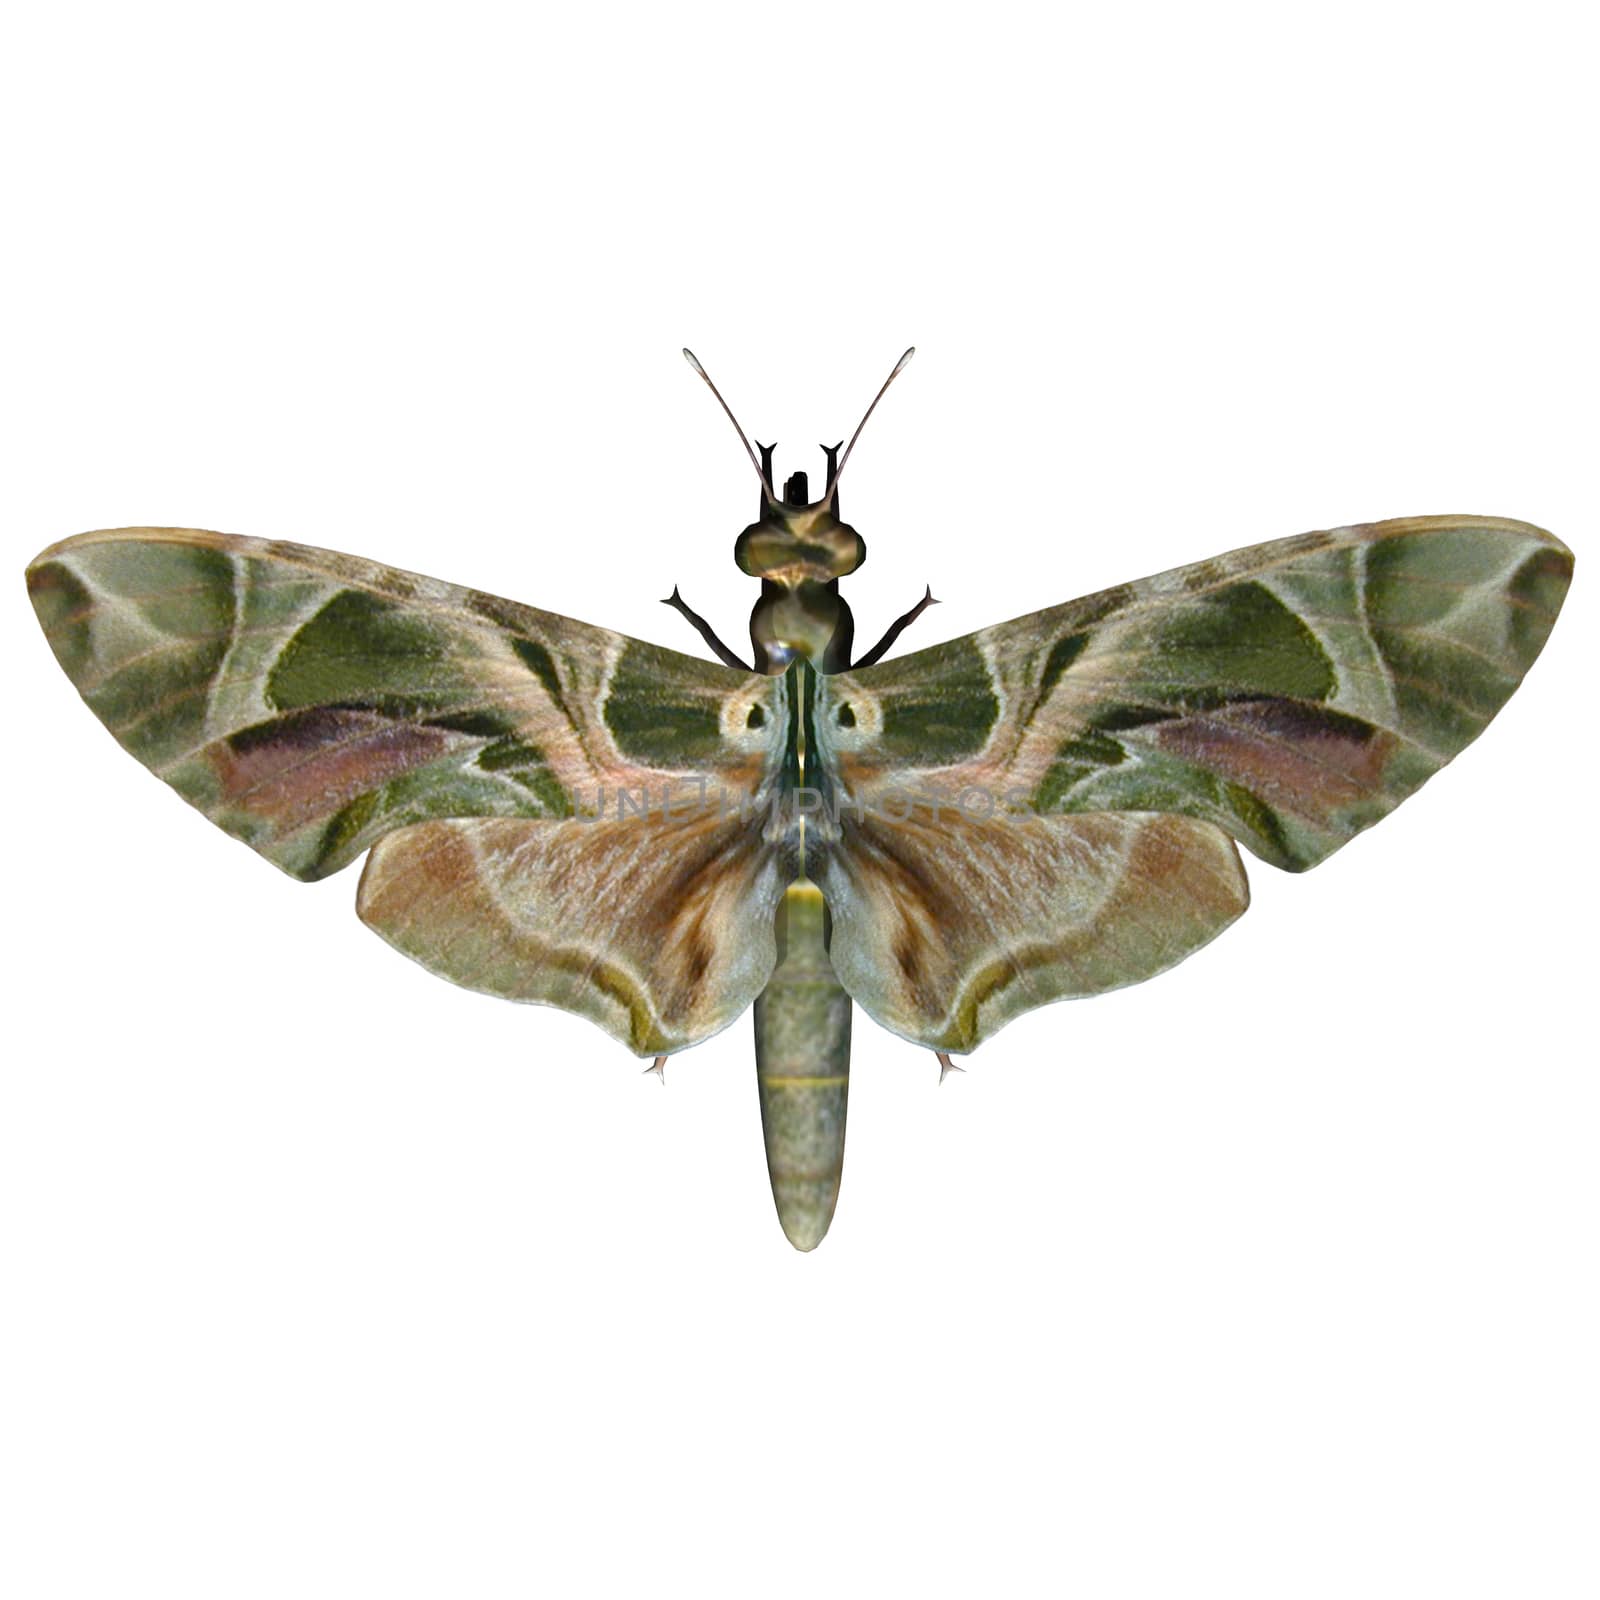 Oleander Hawk-moth by Vac